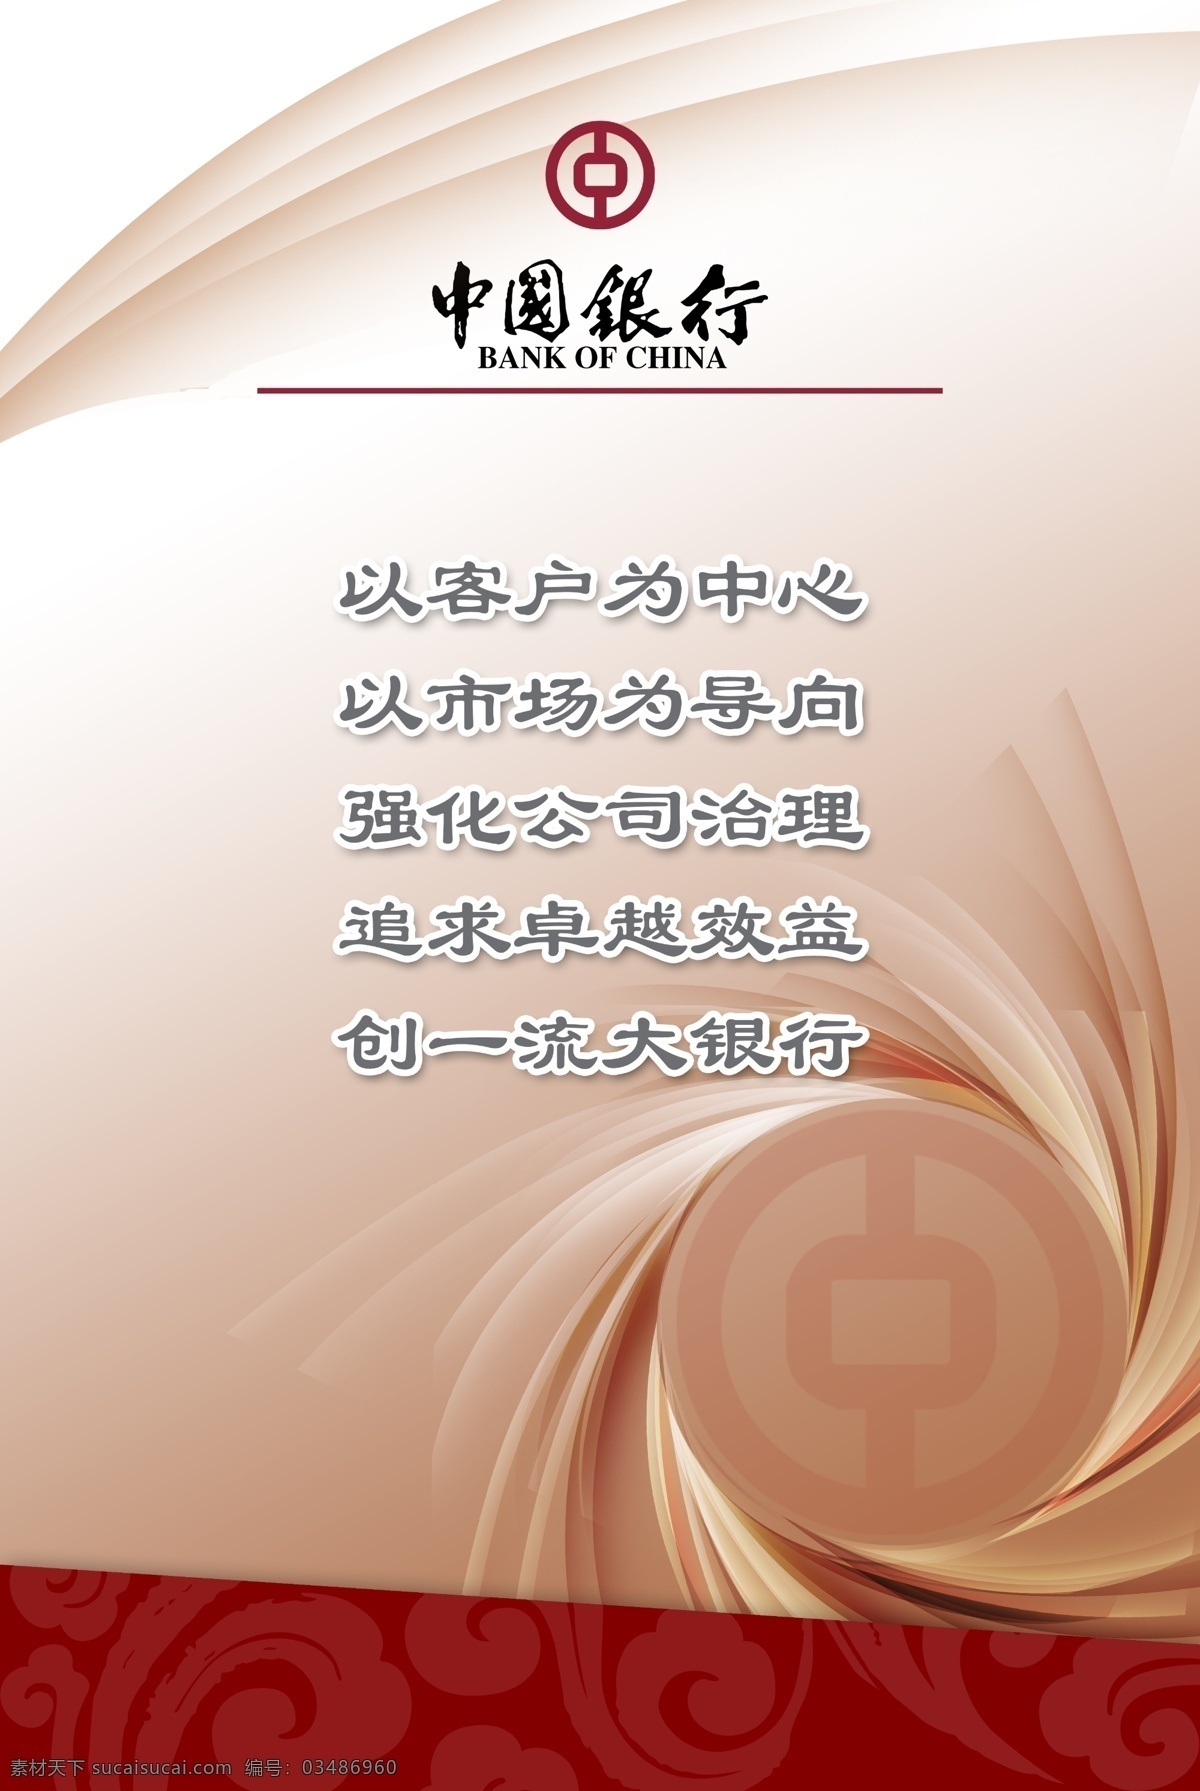 中国银行 企业文化 银行文化 银行制度 银行版面 制度版面 展板模板